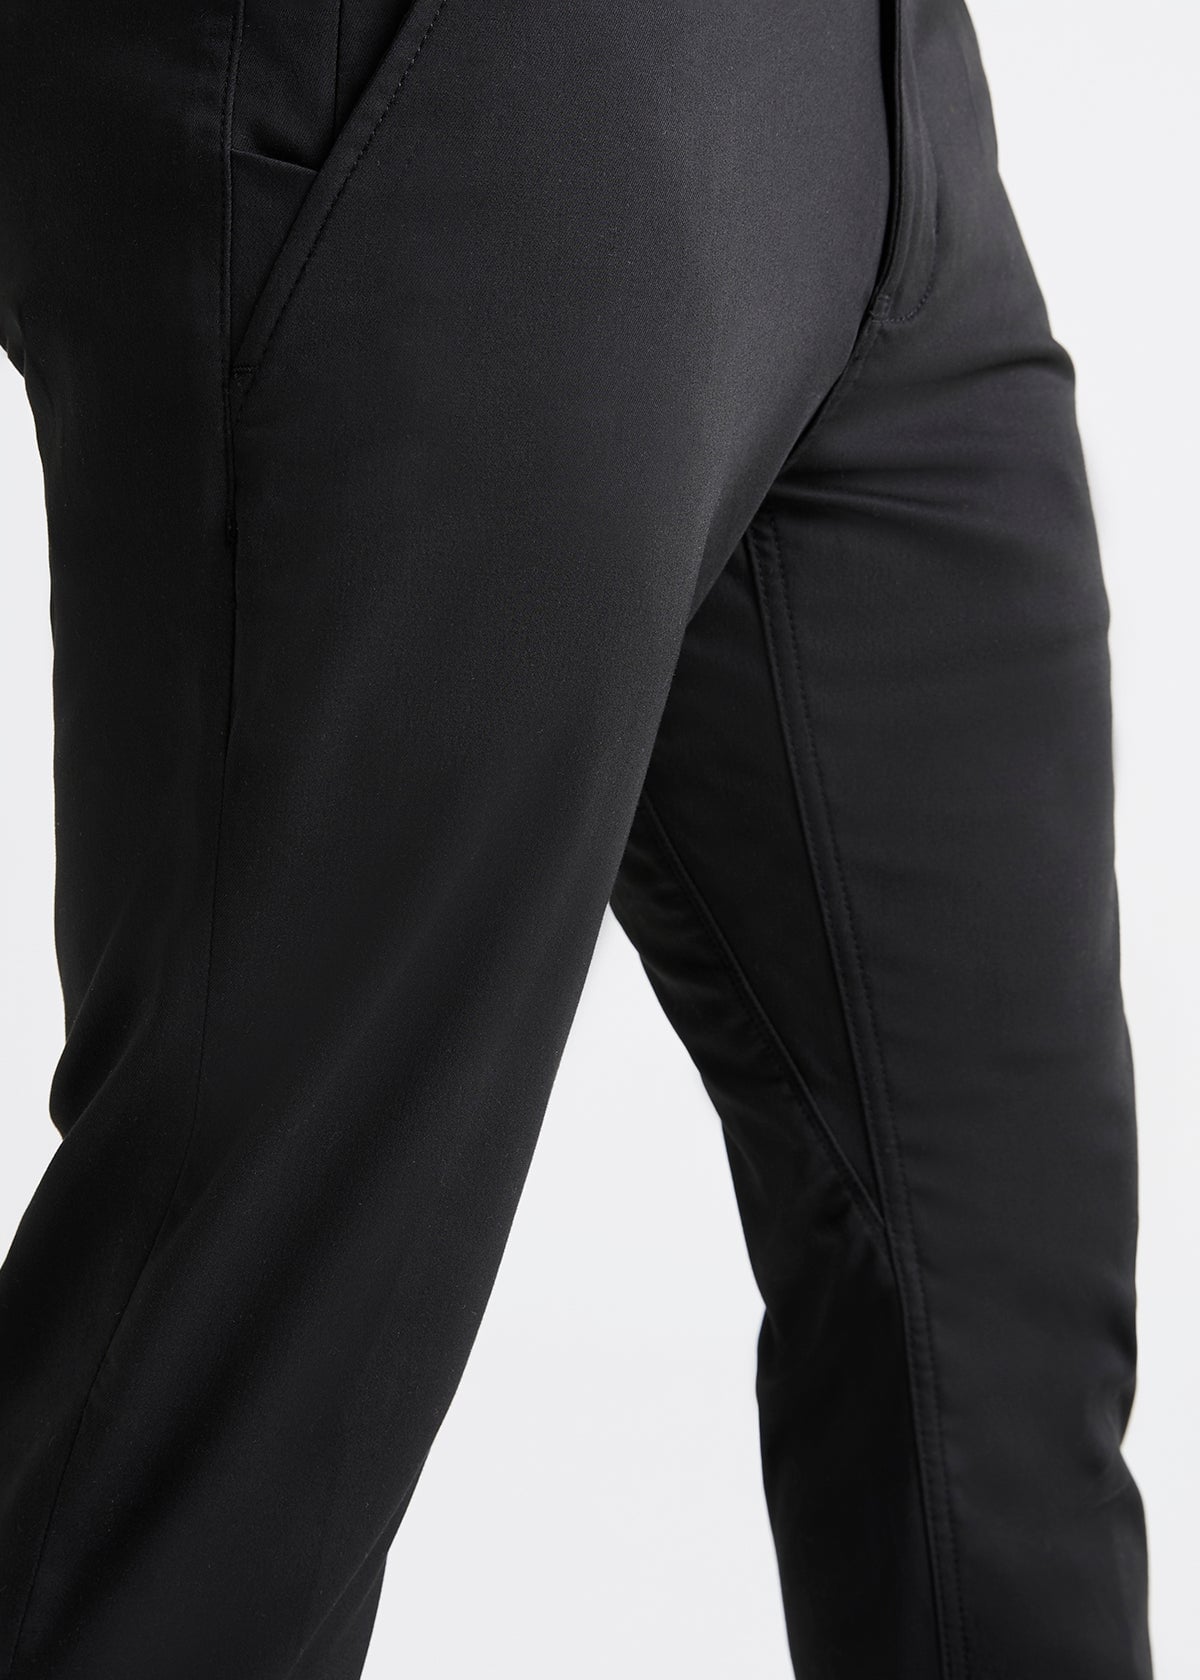 Black Dress Pants Men Slim Fit | Elegant Black Pants Cotton Men - Black Suit  Pants - Aliexpress